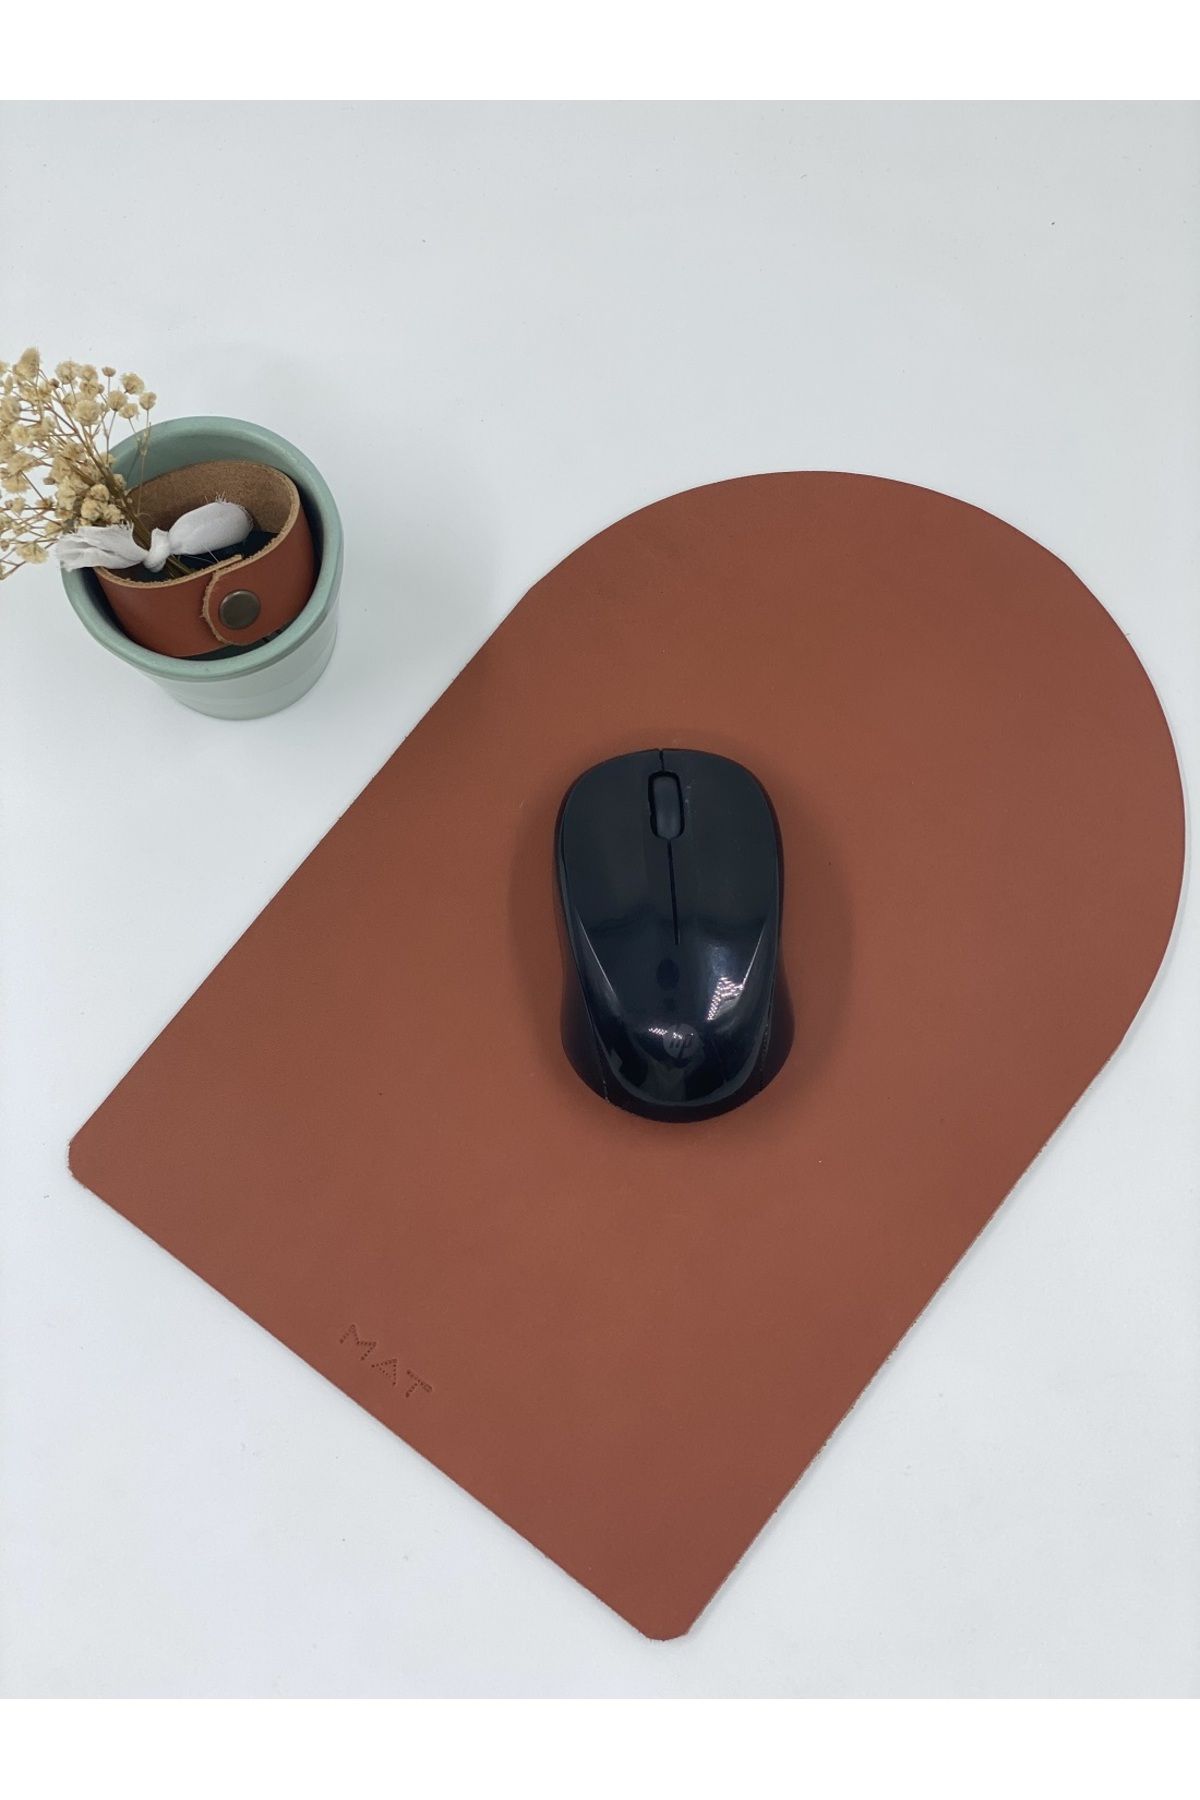 MAT Deri Mousepad Hakiki Deri El Yapımı Özel Tasarım Oyuncu Mousepad 28x19 cm